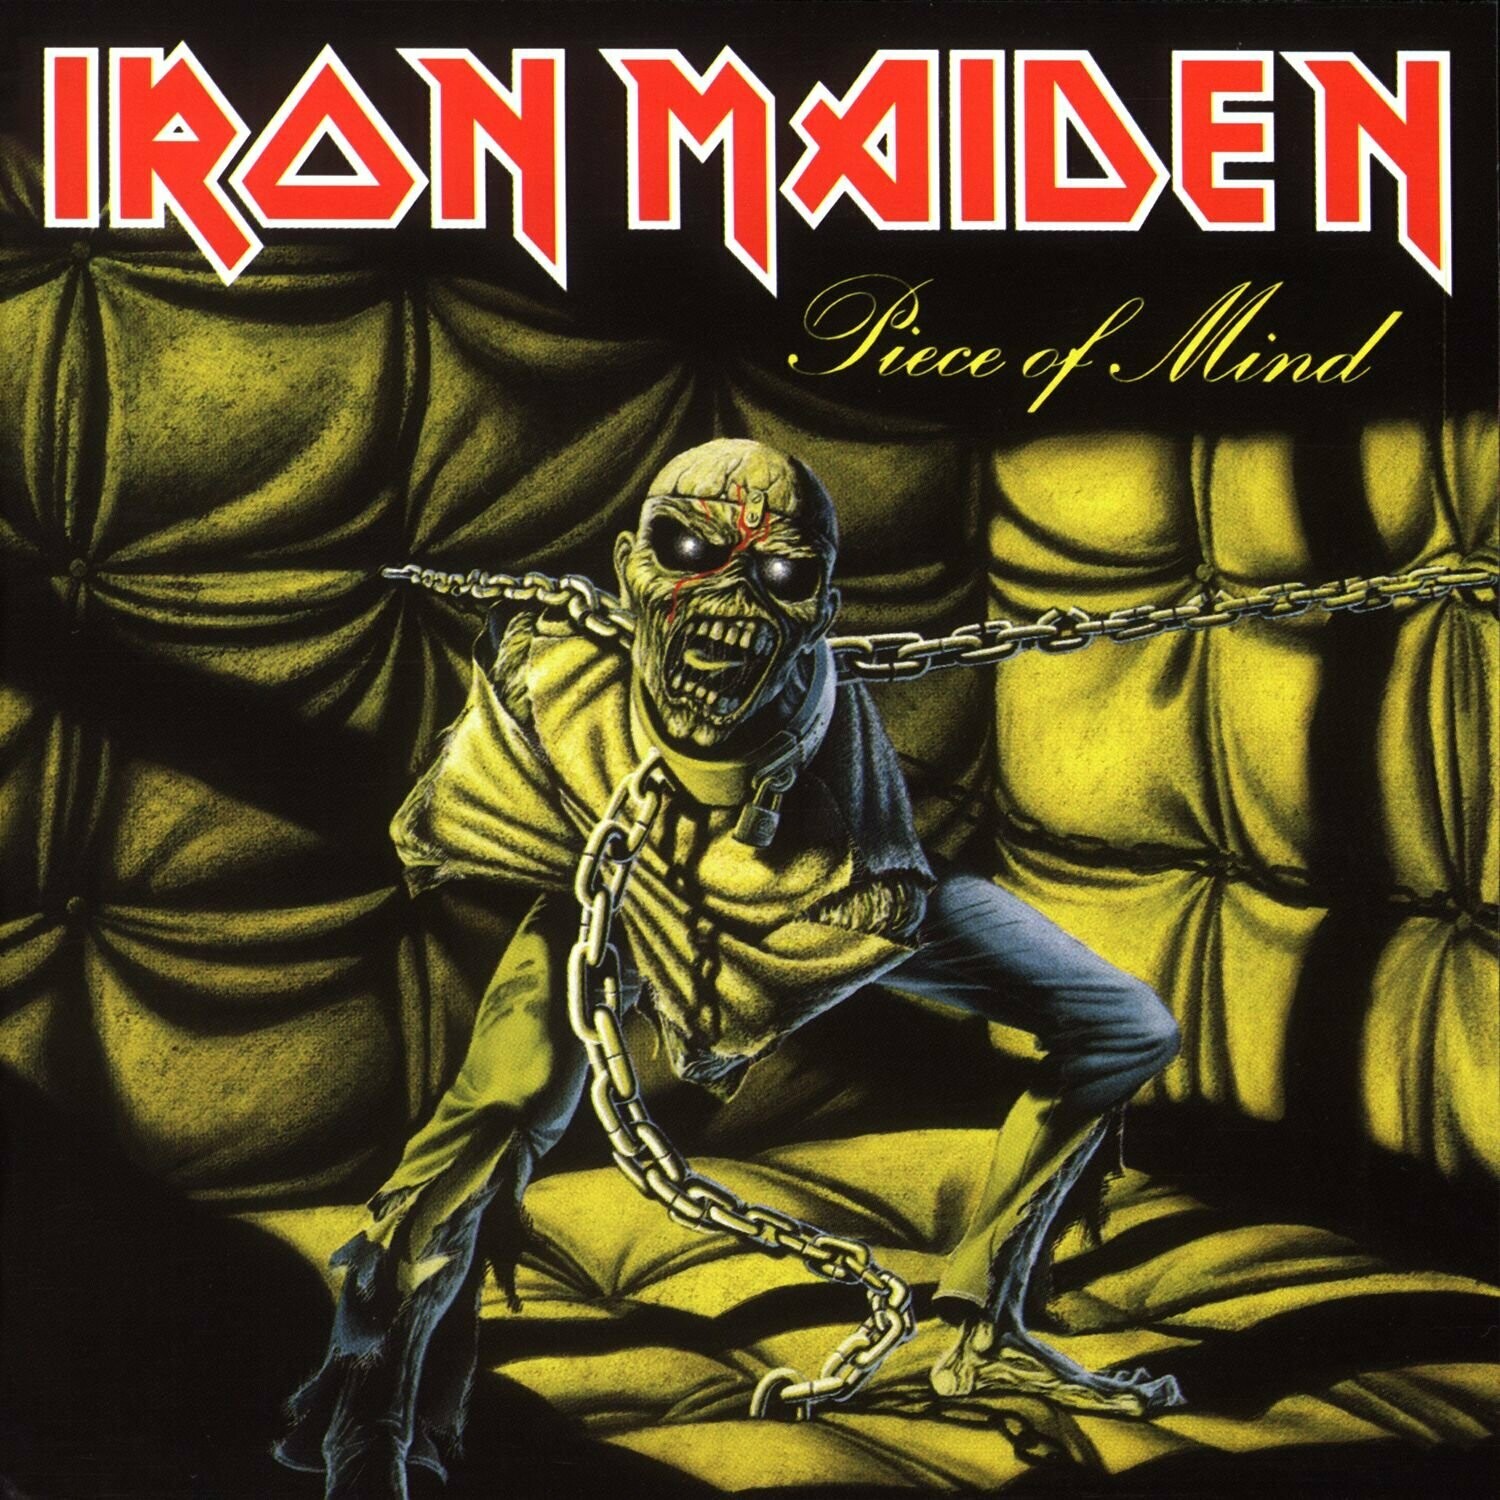 Iron Maiden "Piece Of Mind" *TAPE* 1983